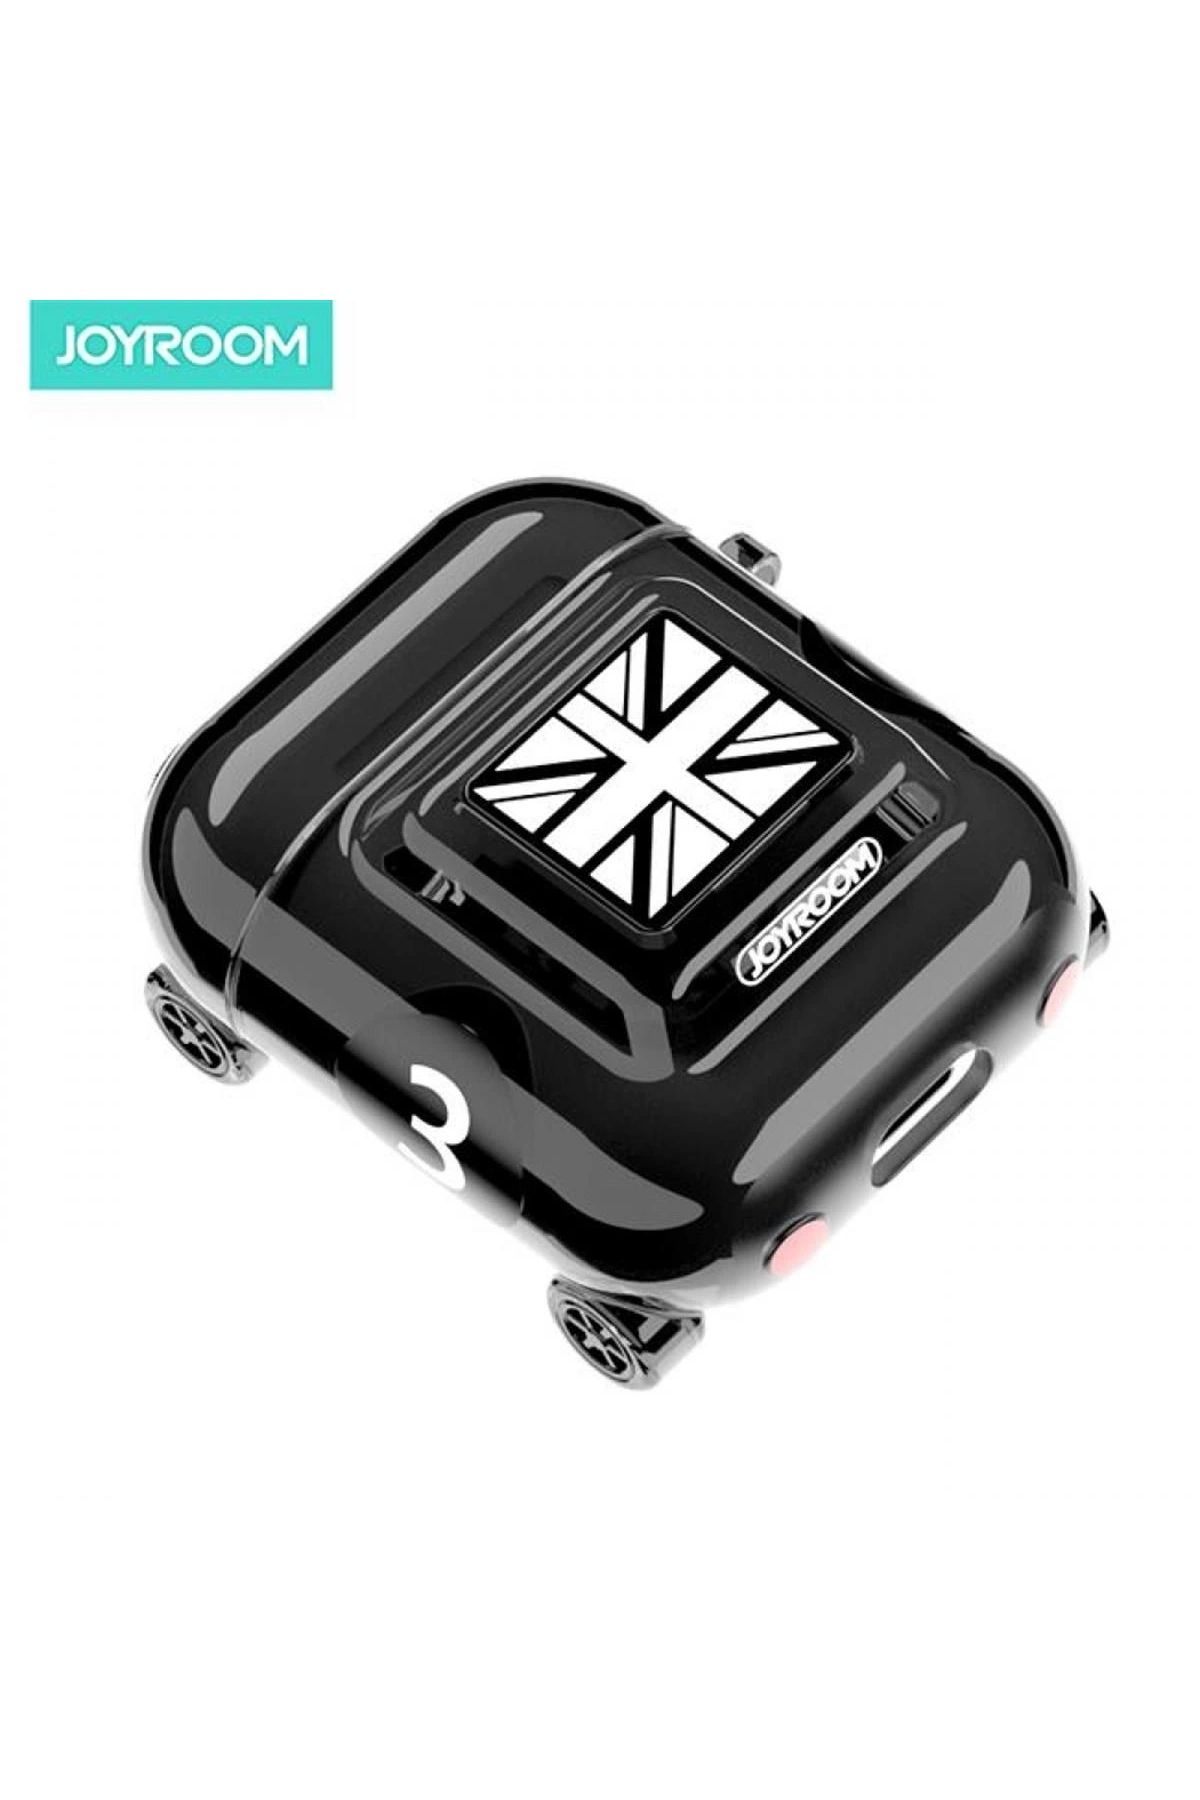 Joyroom İphone Airpods 1. Ve 2. Nesil Uyumlu Araba Figürlü Koruyucu Kılıf